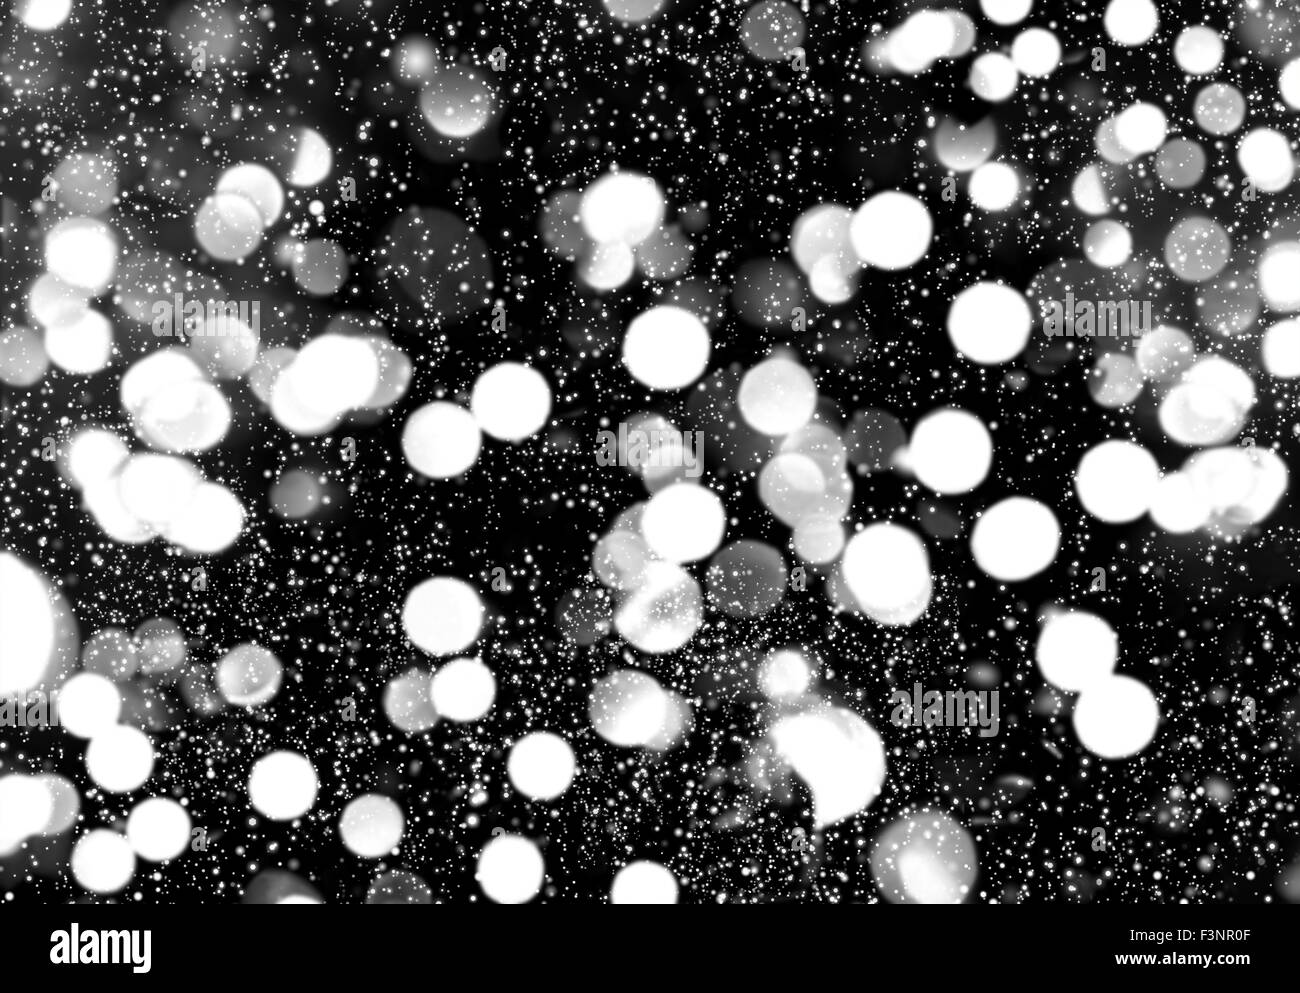 Feux de flou artistique avec effet de neige. Nuit d'hiver à la ville. Abstract black white background Banque D'Images